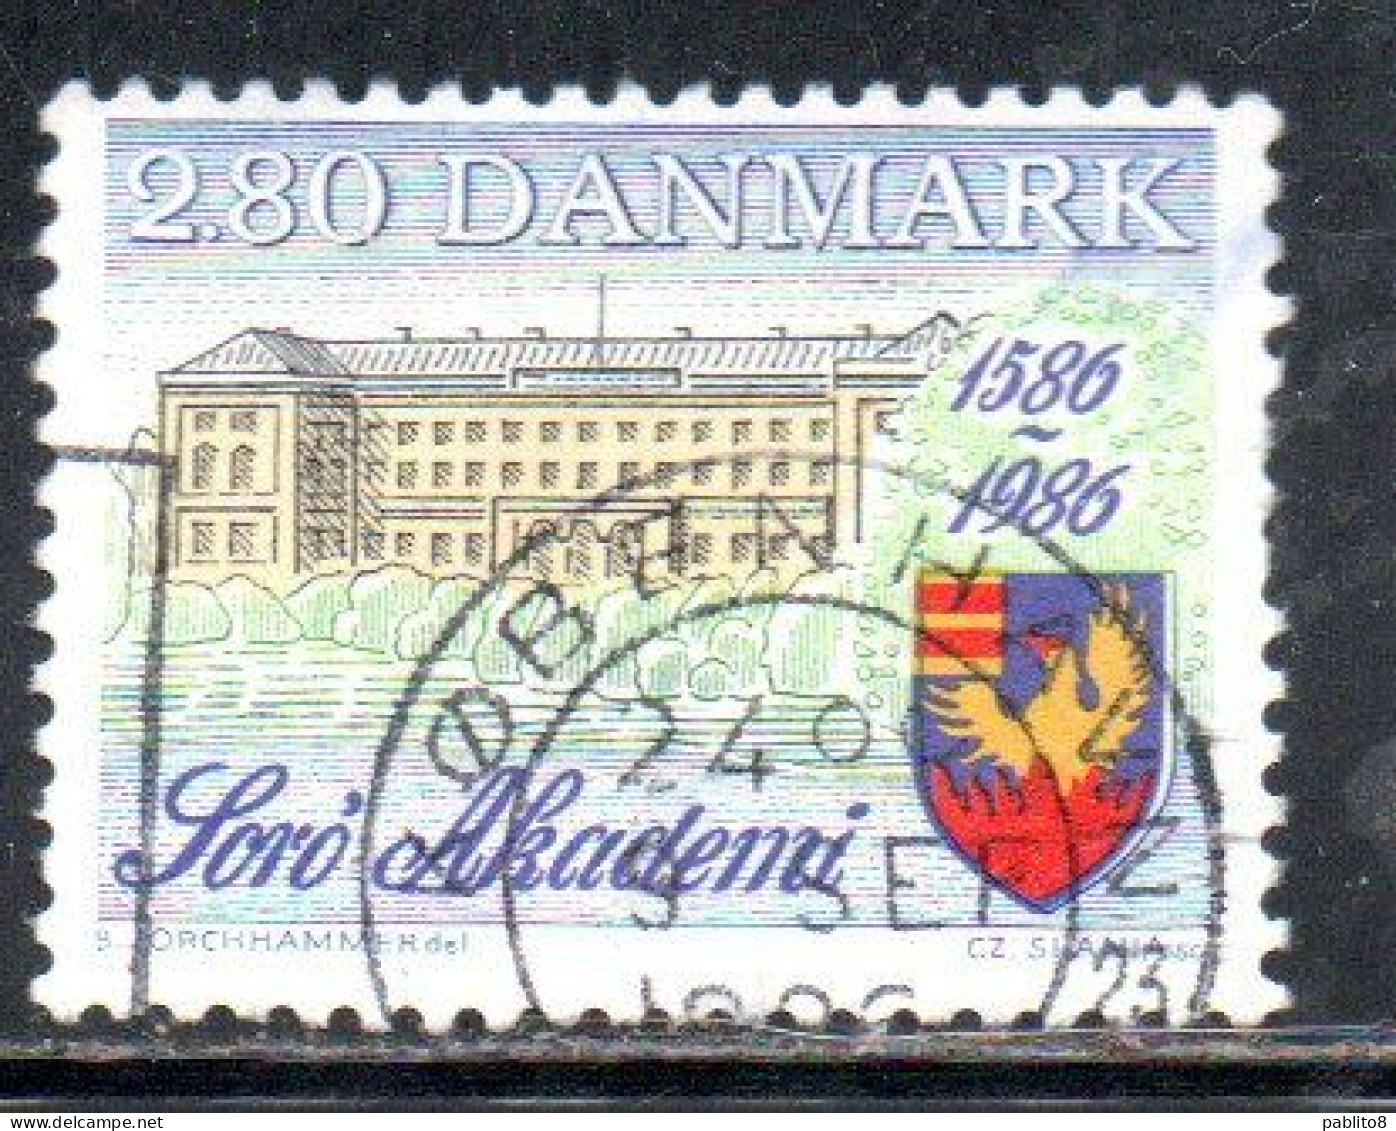 DANEMARK DANMARK DENMARK DANIMARCA 1986 SORO ACADEMY 400th ANNIVERSARY 2.80k USED USATO OBLITERE' - Used Stamps